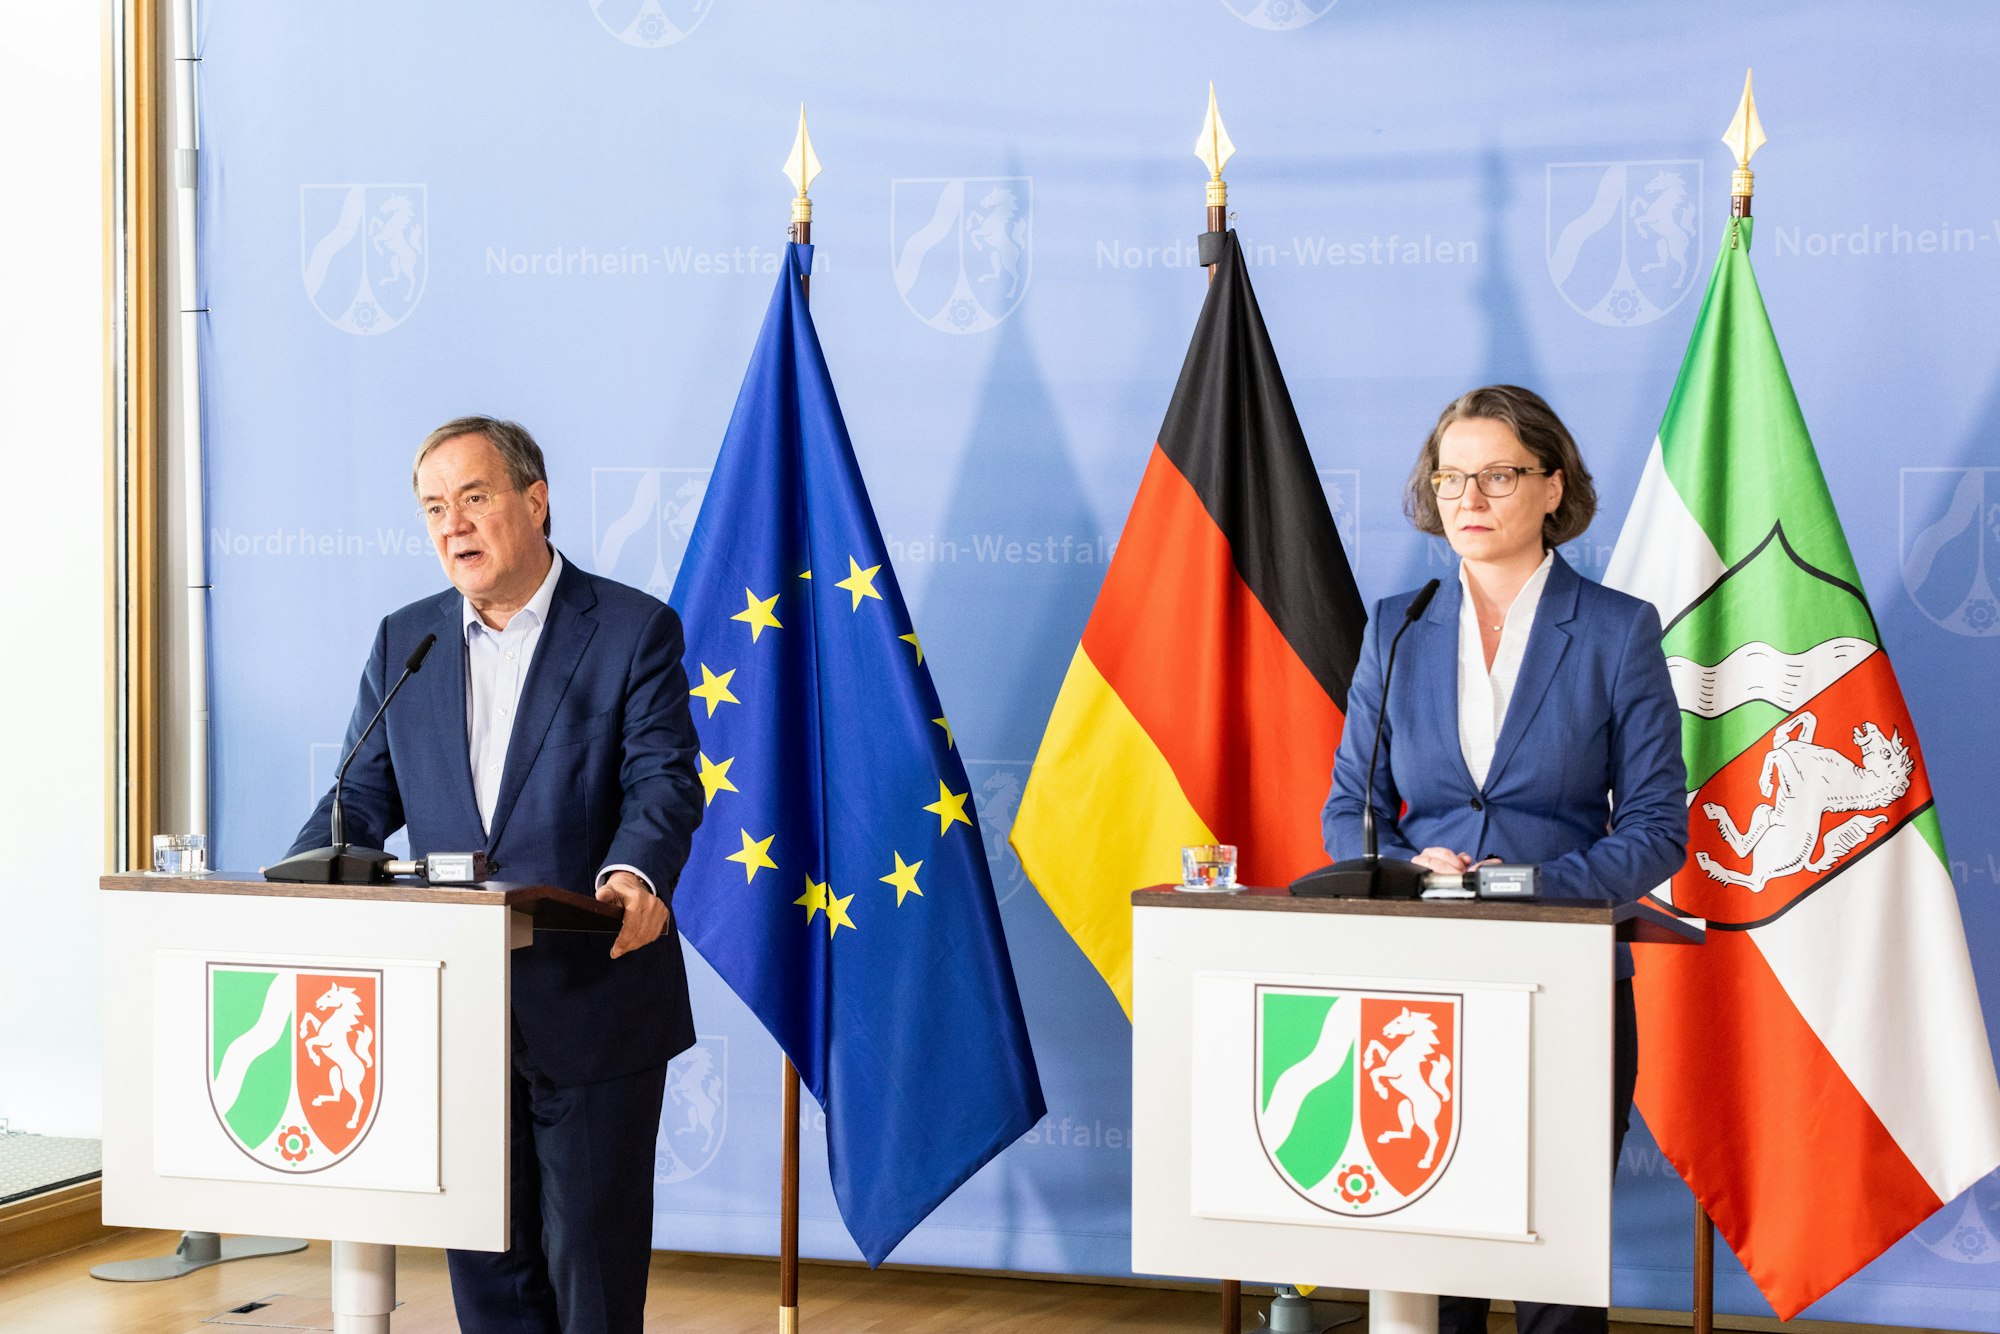 Armin Laschet (l, CDU), Ministerpräsident von Nordrhein-Westfalen, und Ina Scharrenbach (CDU), Ministerin für Heimat, Kommunales, Bau und Gleichstellung des Landes Nordrhein-Westfalen, sprechen während einer Pressekonferenz im Juli 2021.